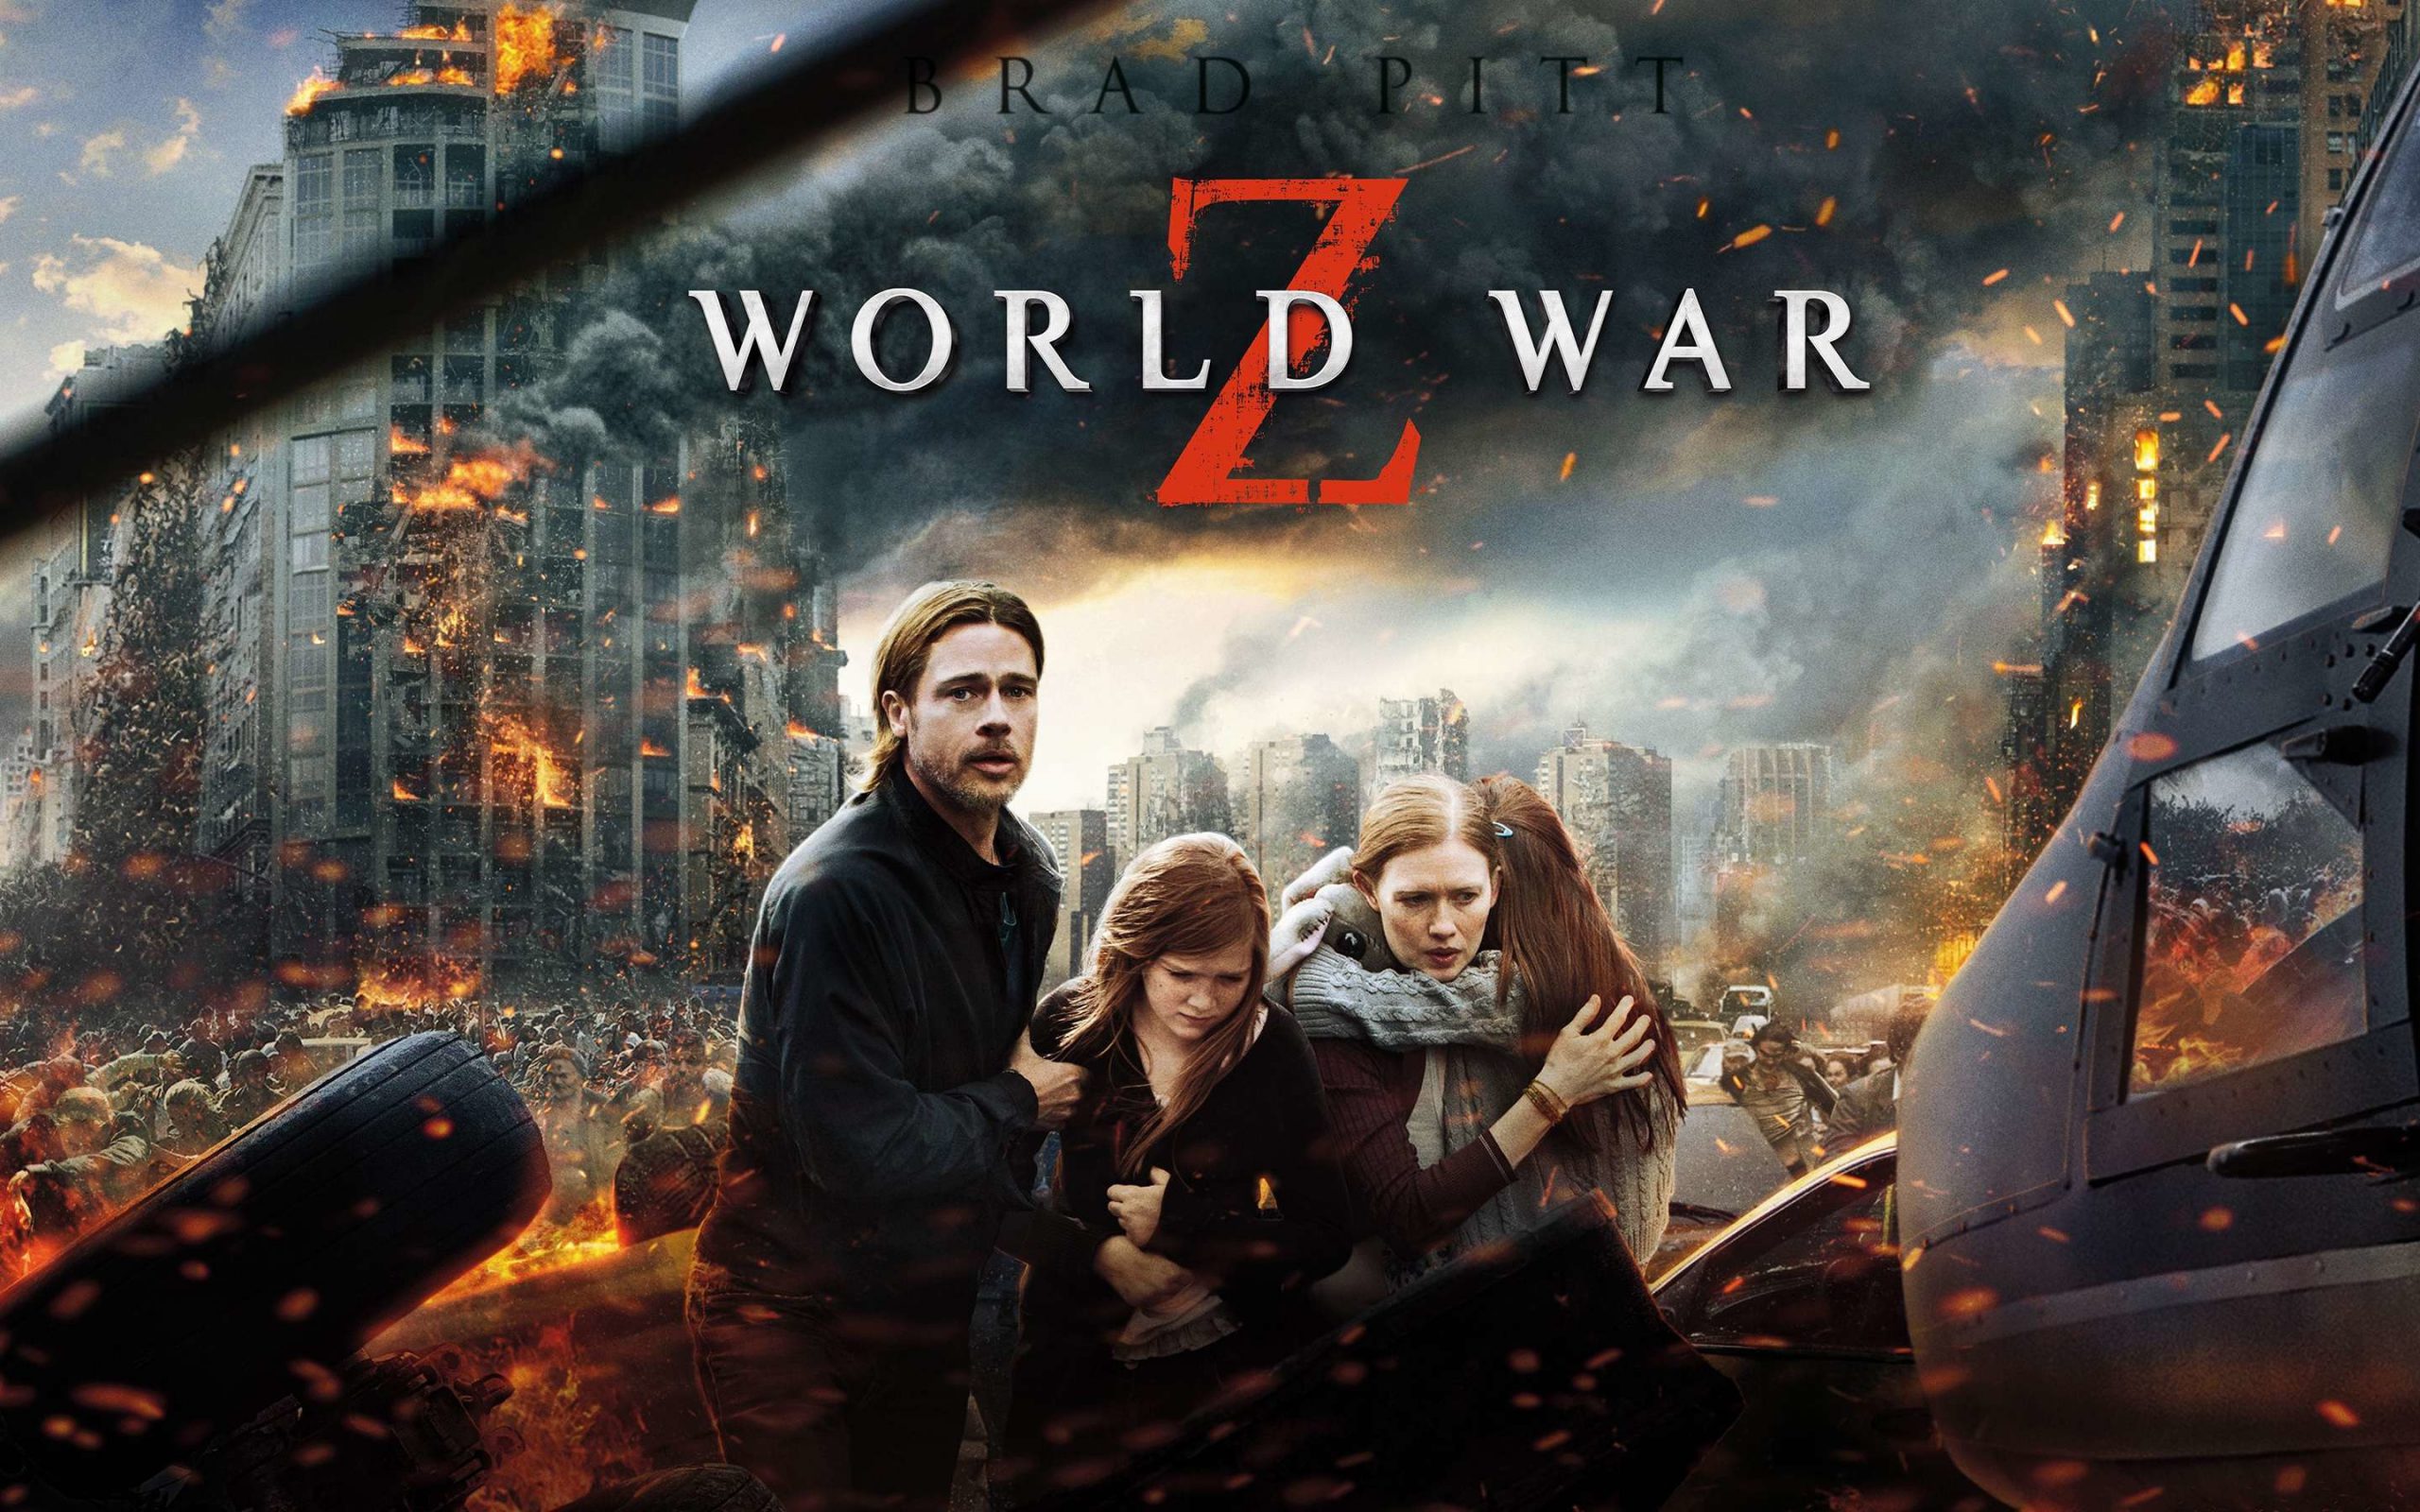 Guerra Mundial Z 2 seria parecido com a série The Last of Us, revelou David  Fincher.